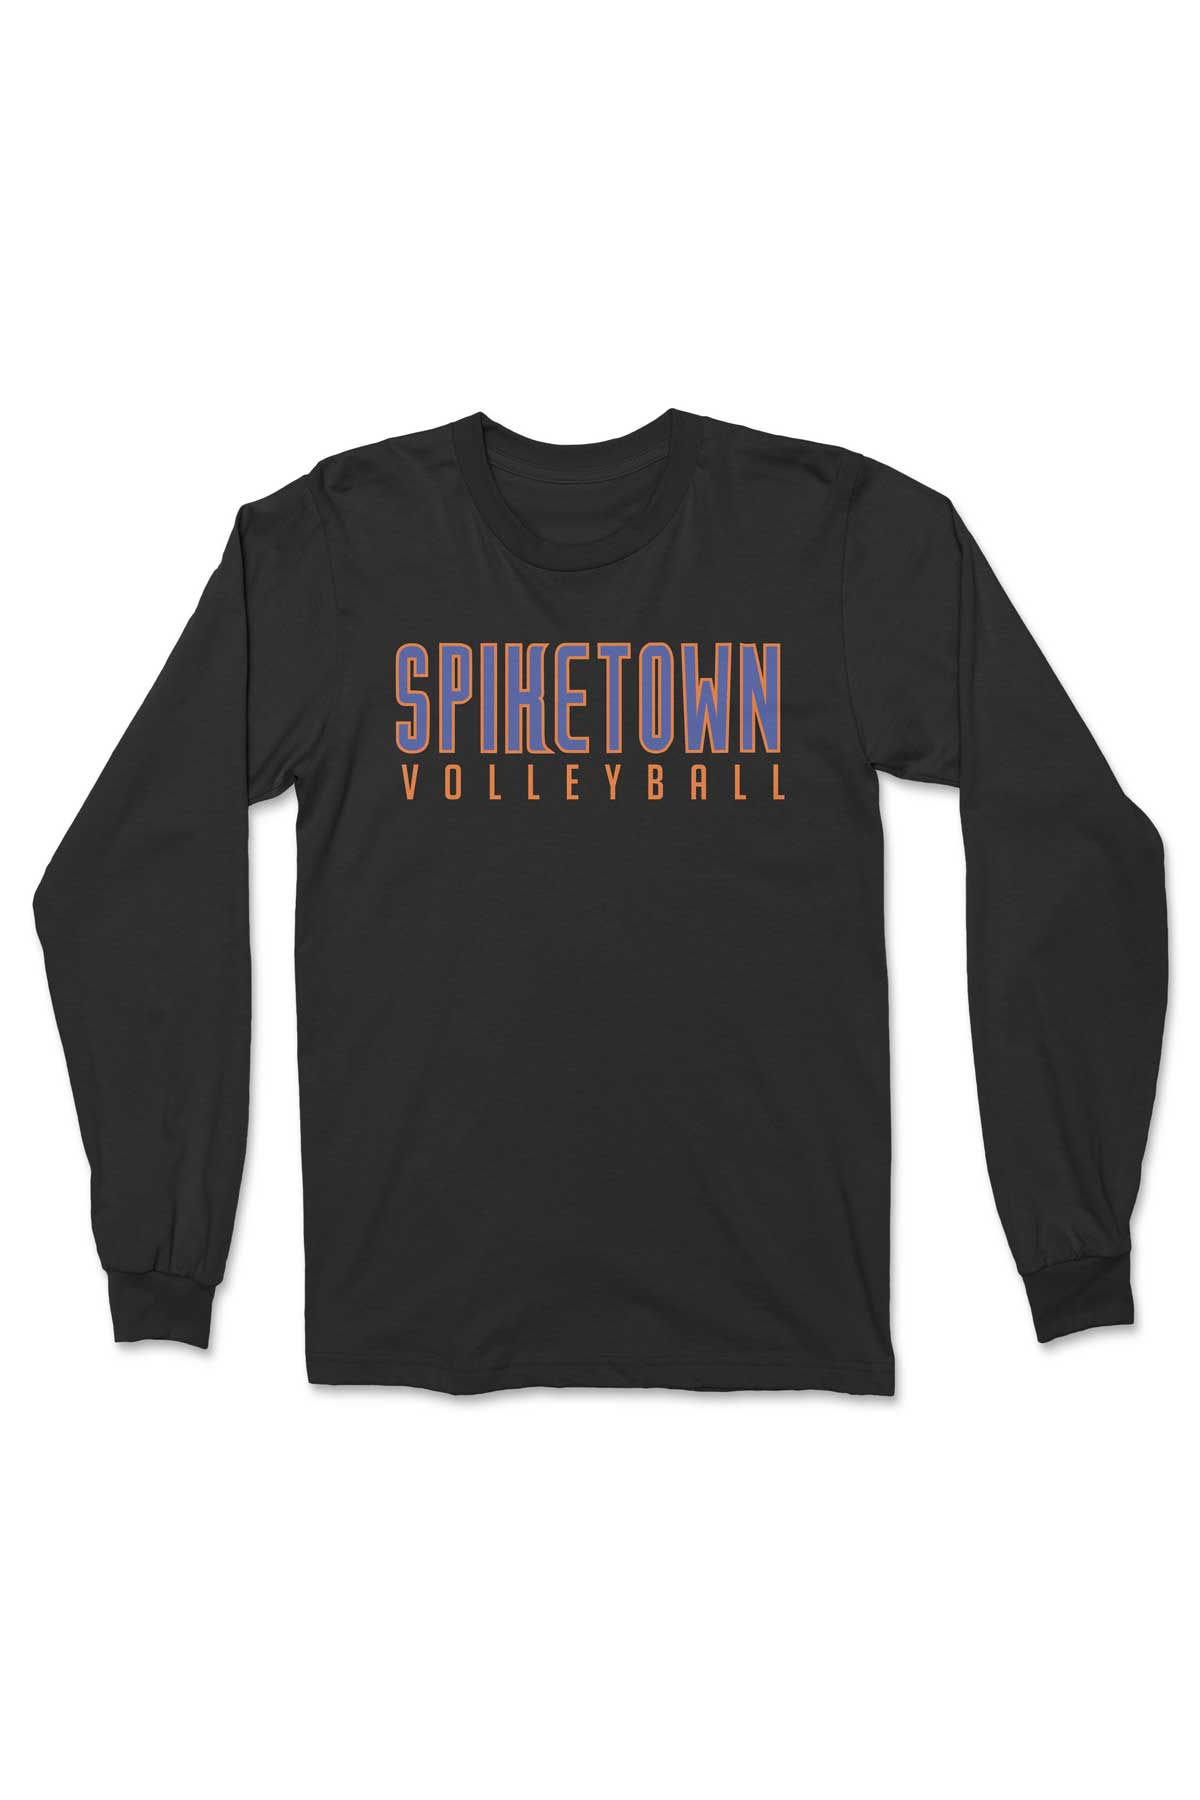 Spiketown Volleyball Premium Long Sleeve T-Shirt